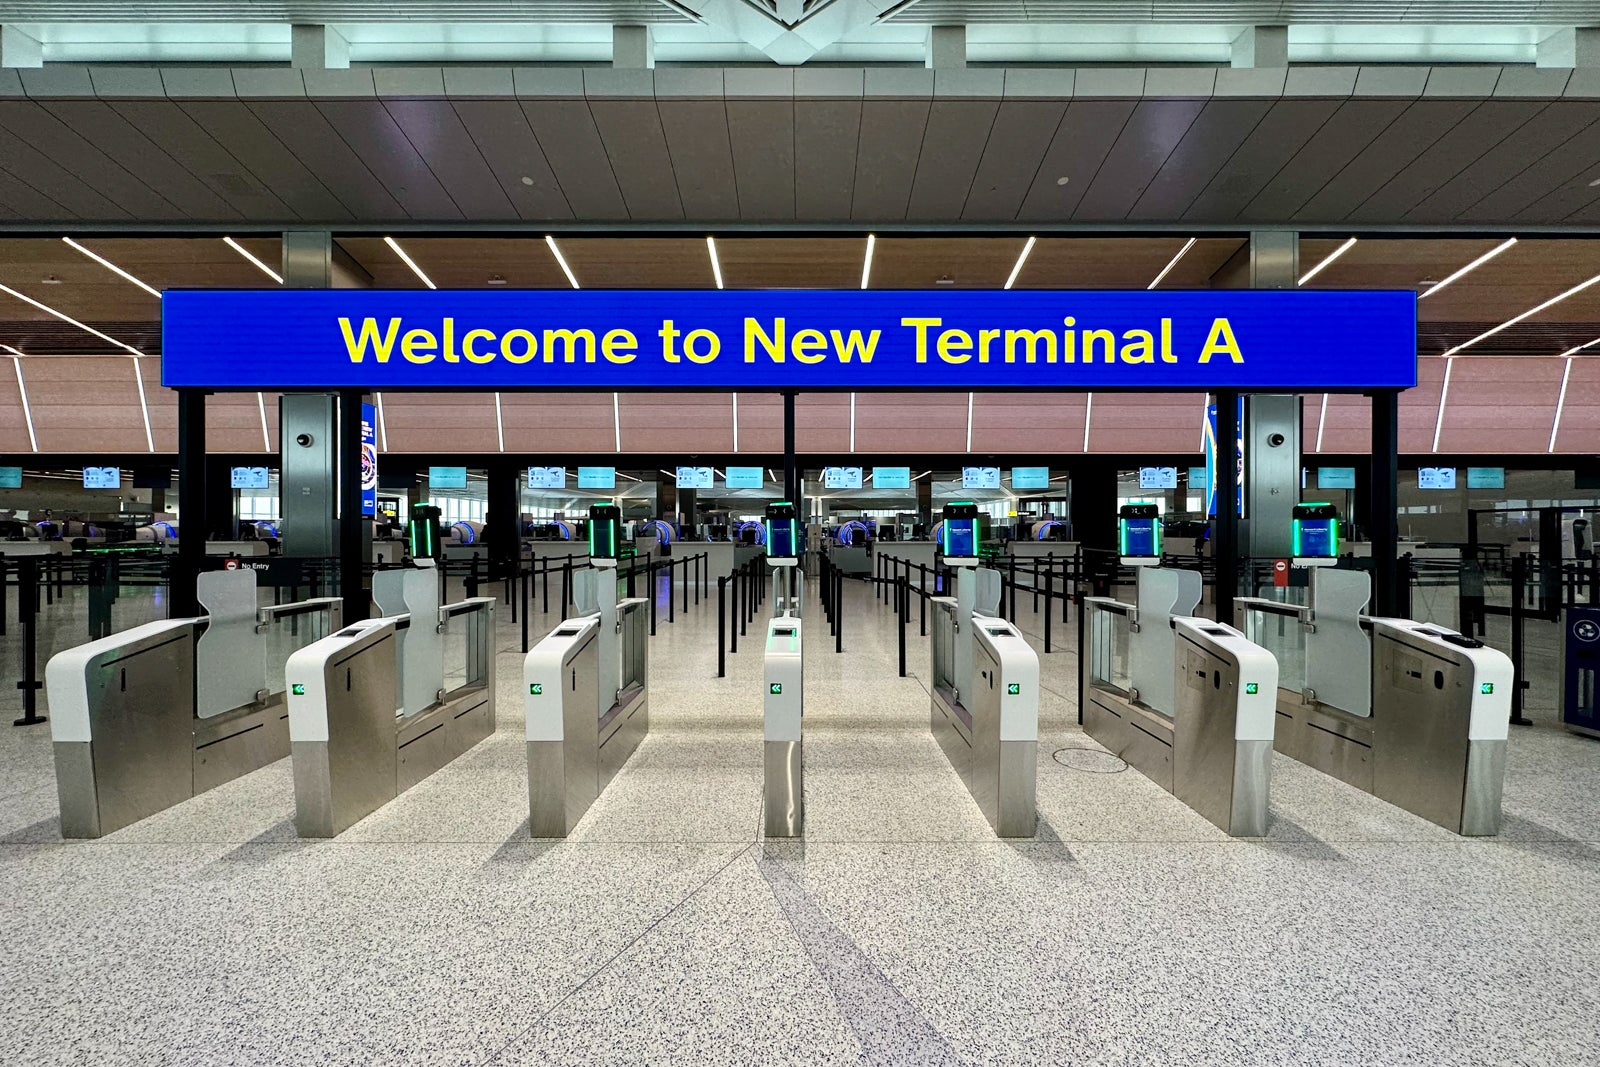 Terminal A